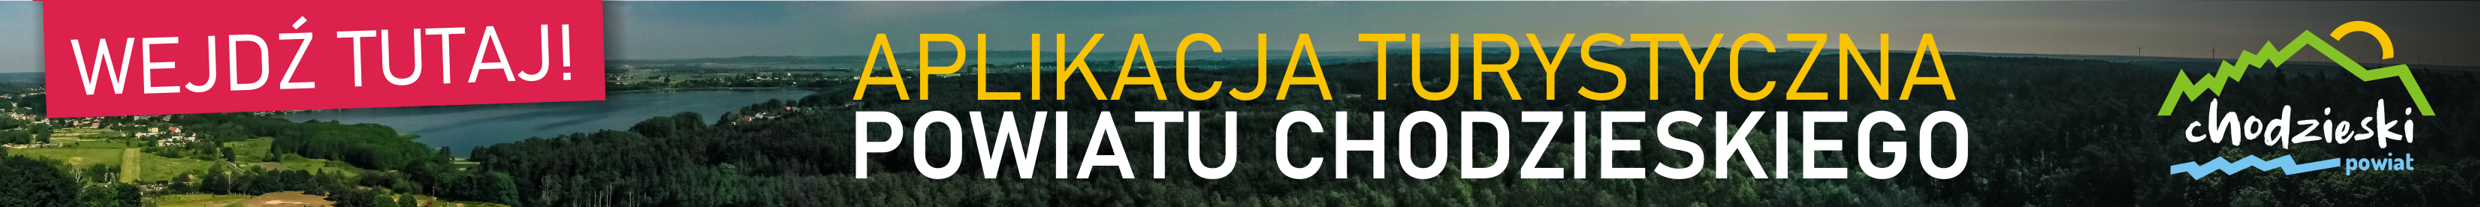 Aplikacja Turystyczna Powiatu Chodzieskiego - kliknięcie spowoduje otwarcie nowego okna